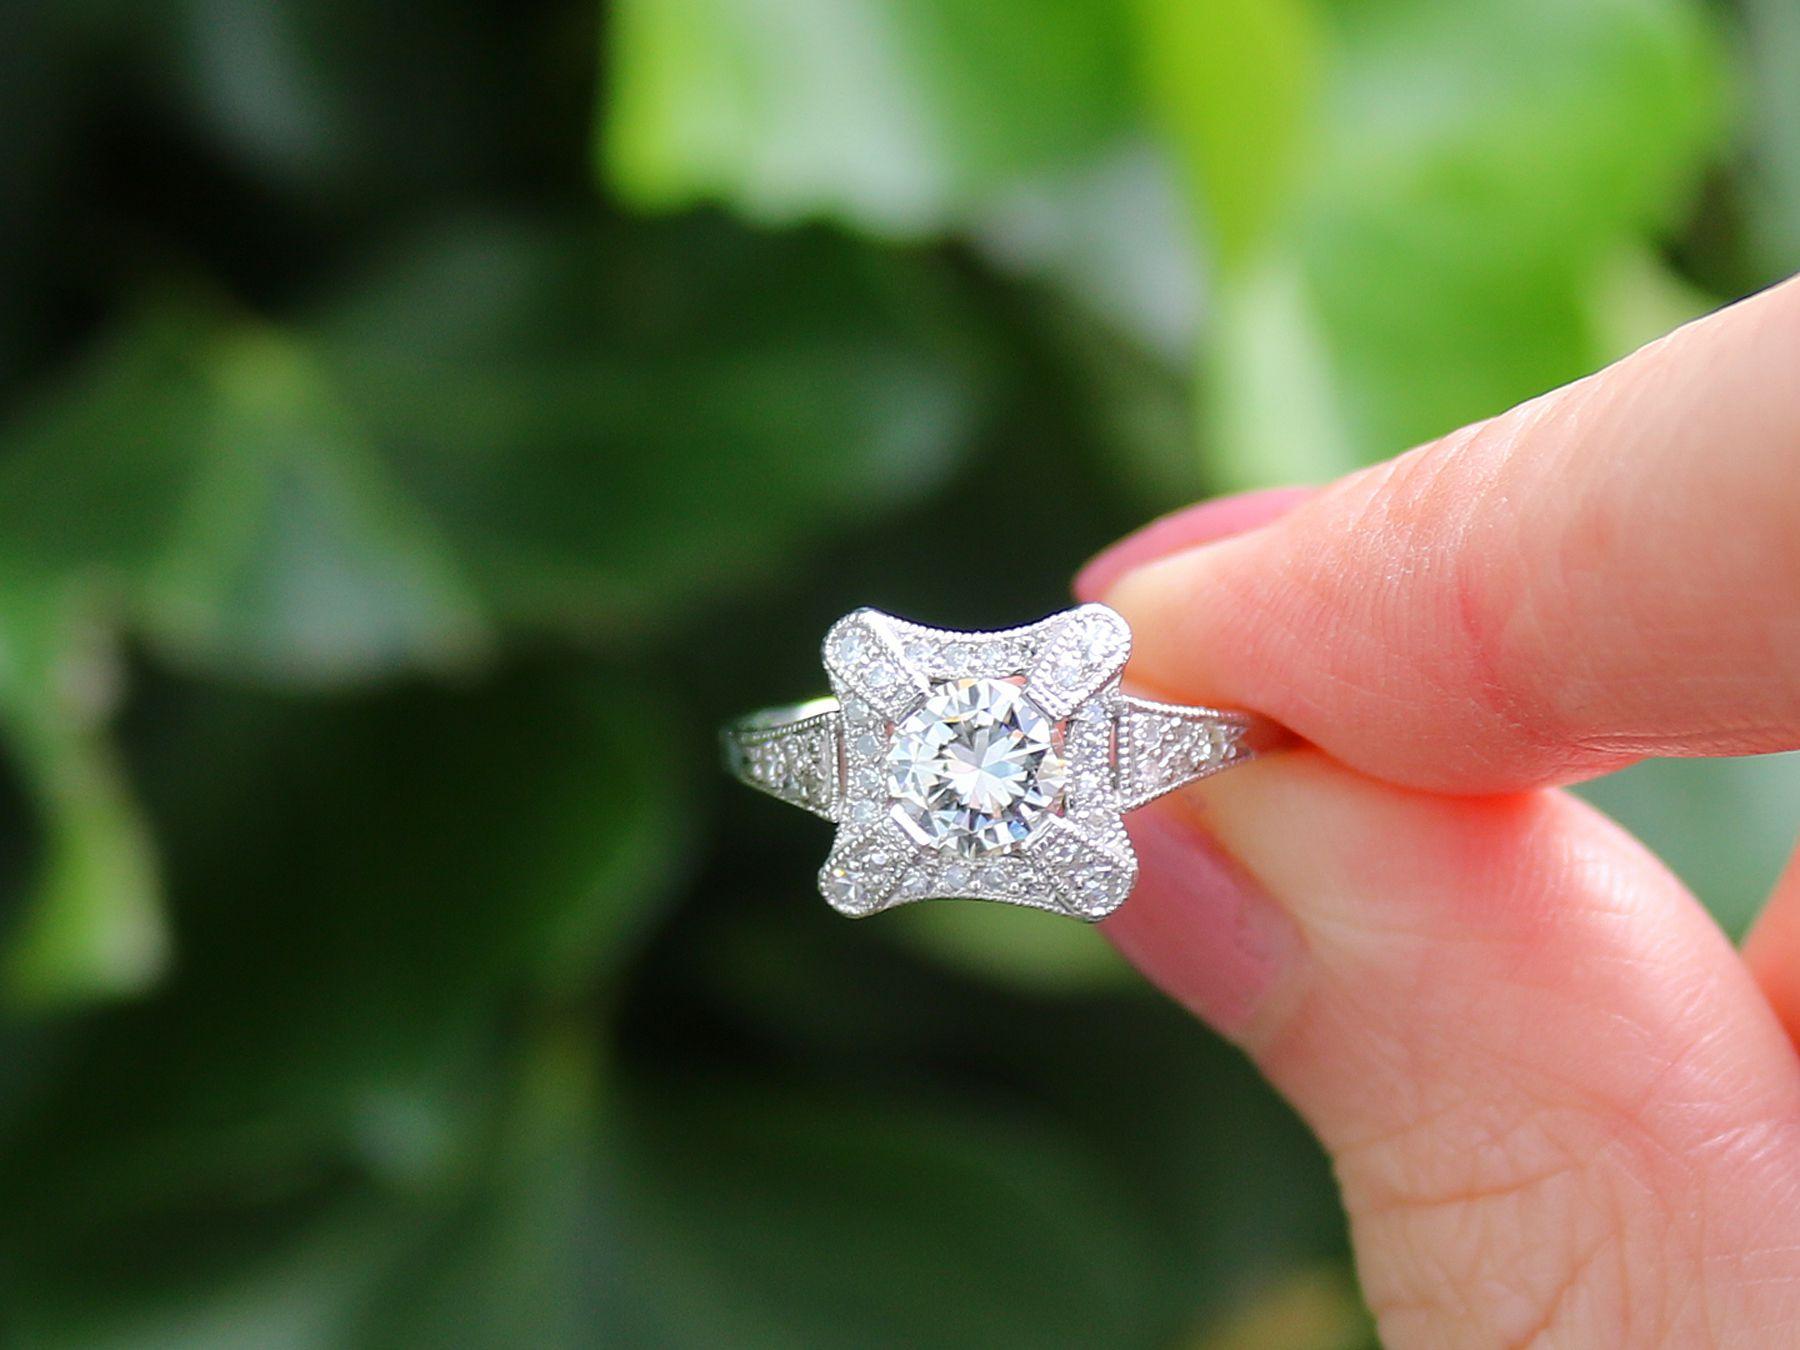 Ein außergewöhnlicher, feiner und beeindruckender 1,01-Karat-Diamant und Platin-Cluster-Ring; Teil unserer vielfältigen Vintage-Schmuck und Estate Jewelry-Kollektionen.

Dieser atemberaubende, feine und beeindruckende Diamantring ist aus Platin